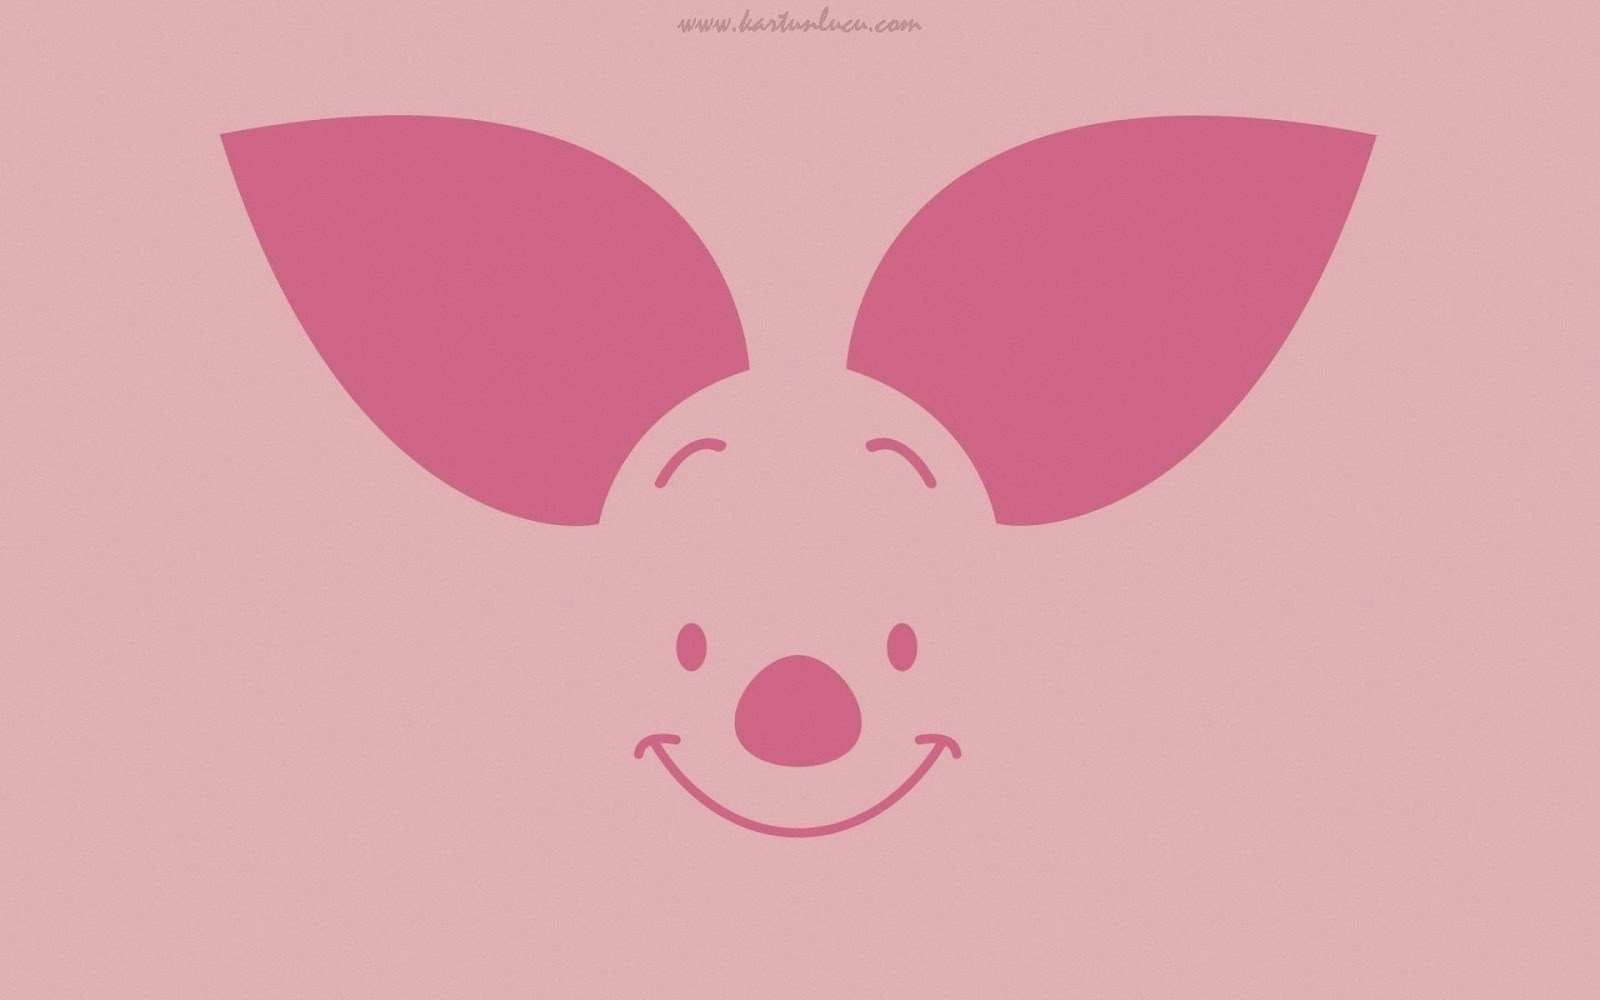 wallpaper pink lucu,pink,cartoon,head,illustration,nose